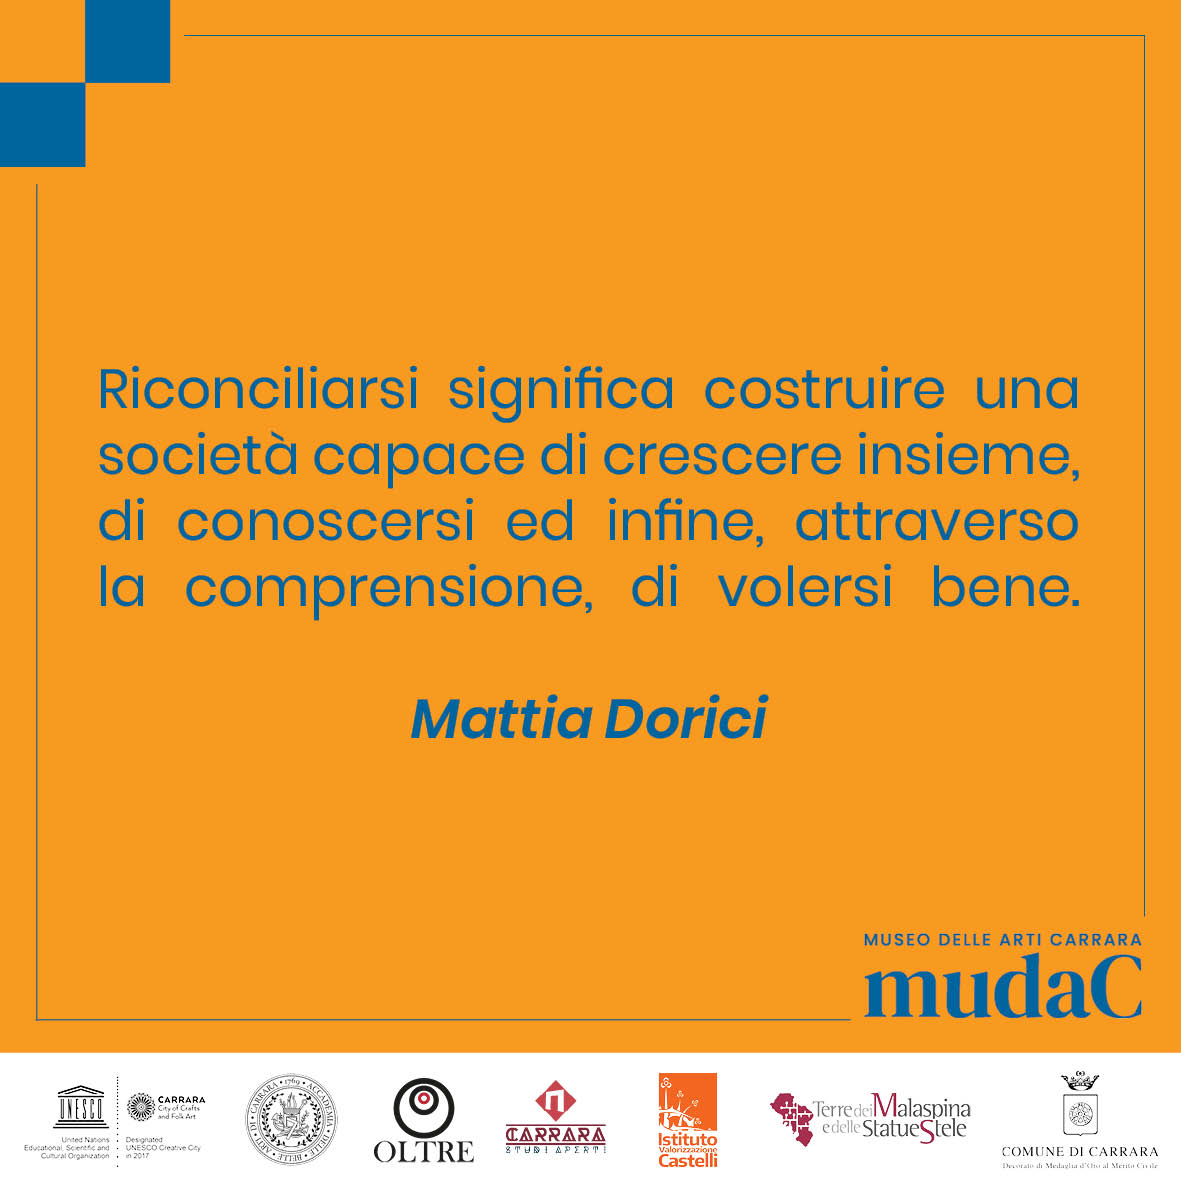 Mattia Dorici